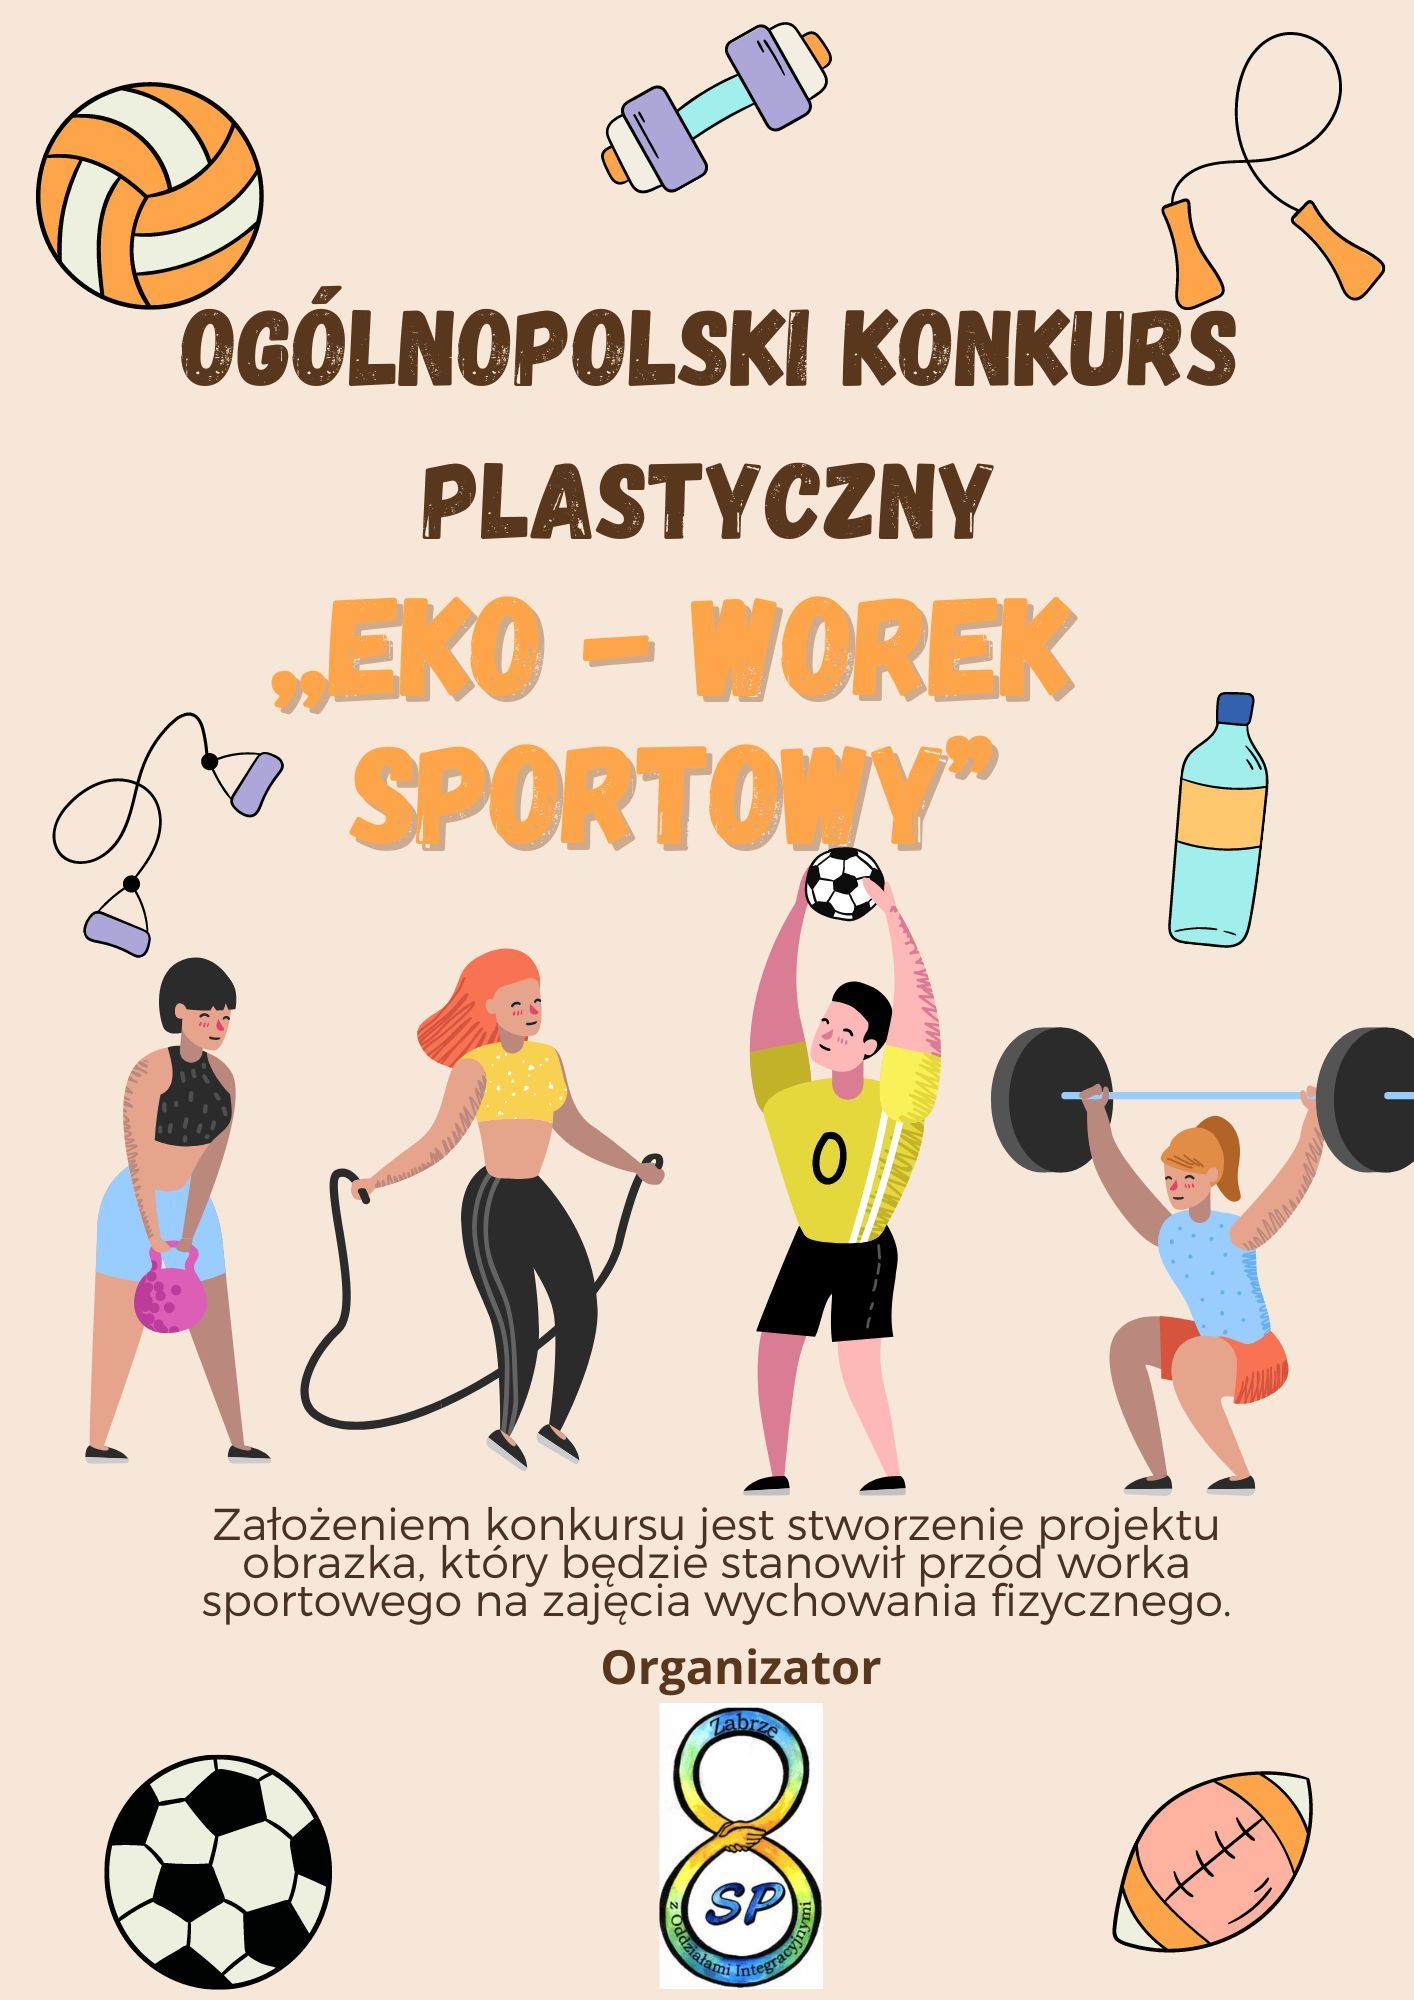 Ogólnopolski konkurs plastyczny ,,Eko - worek sportowy